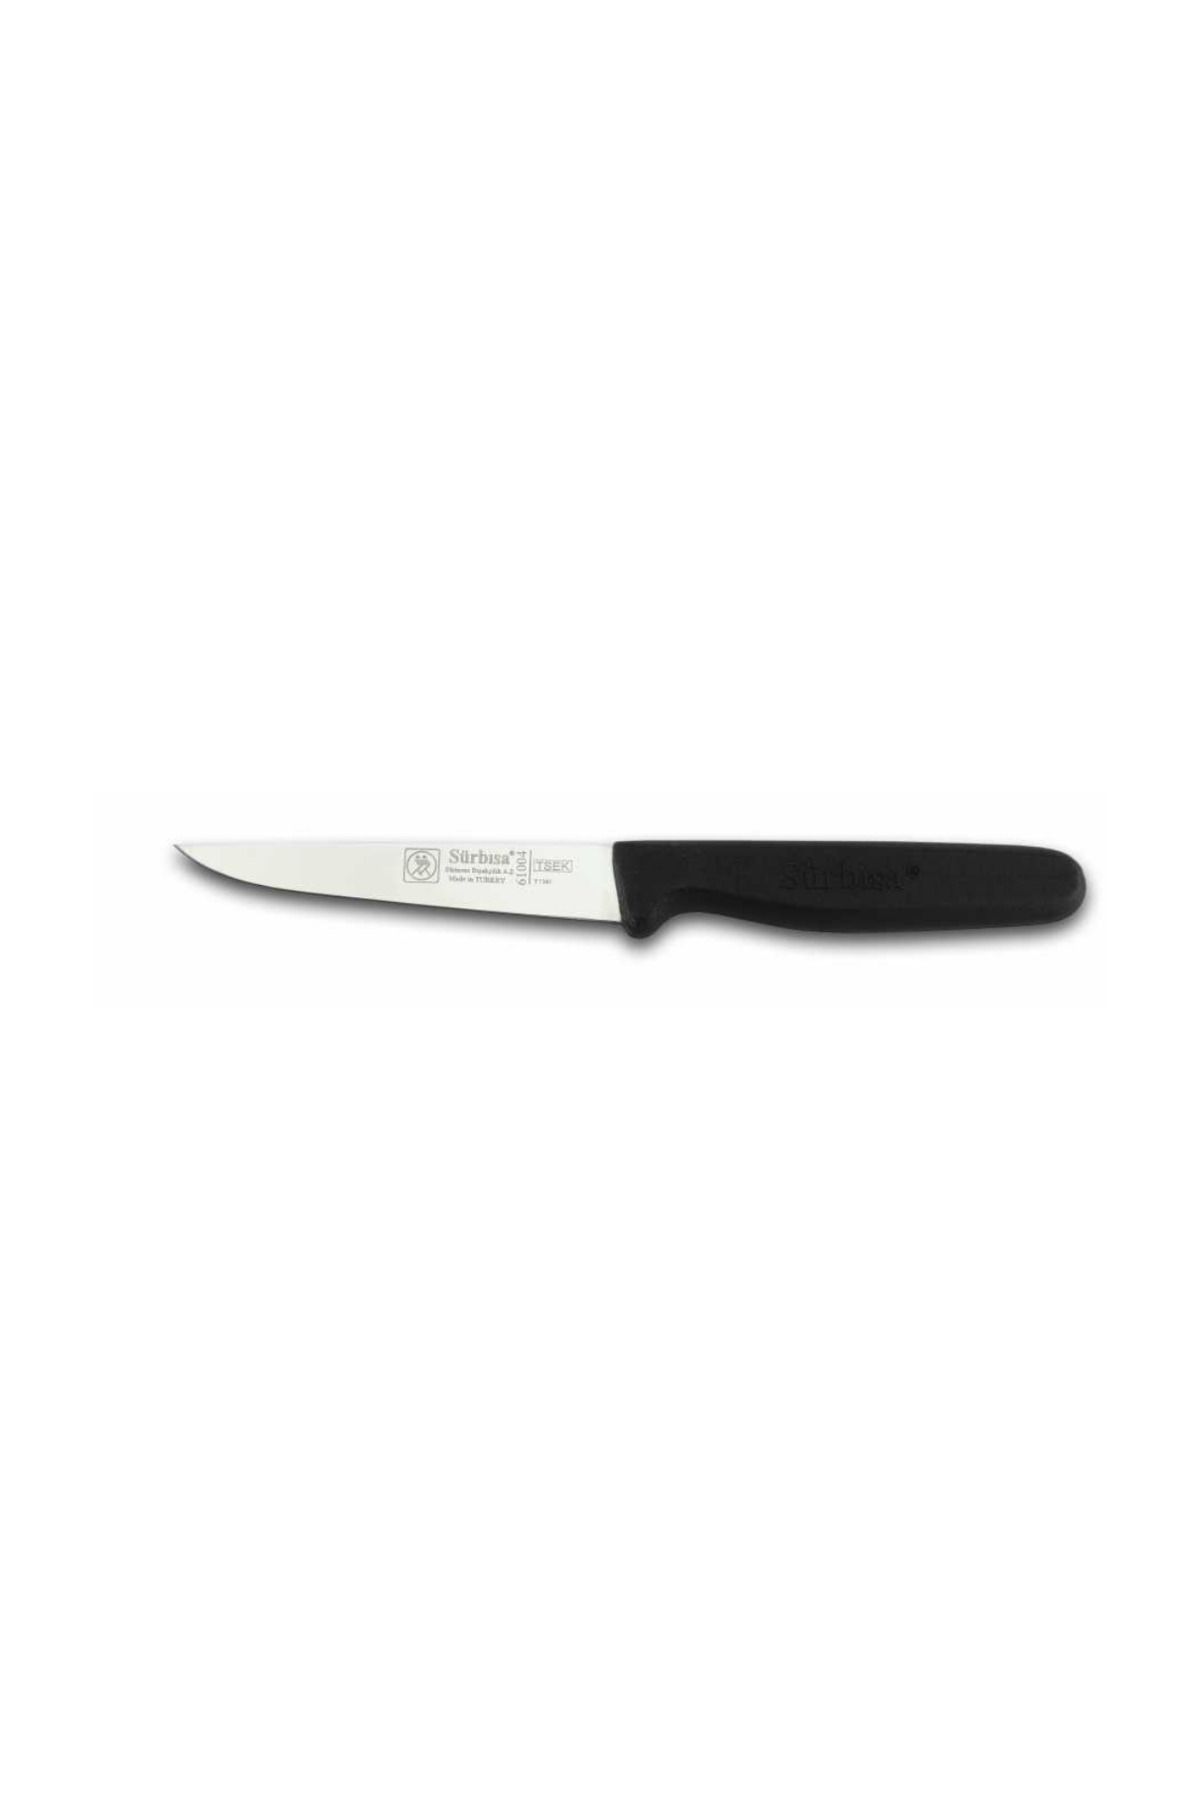 Sürbisa Küçük Sebze Bıçağı 61004 - Karışık Renk 9,5 Cm